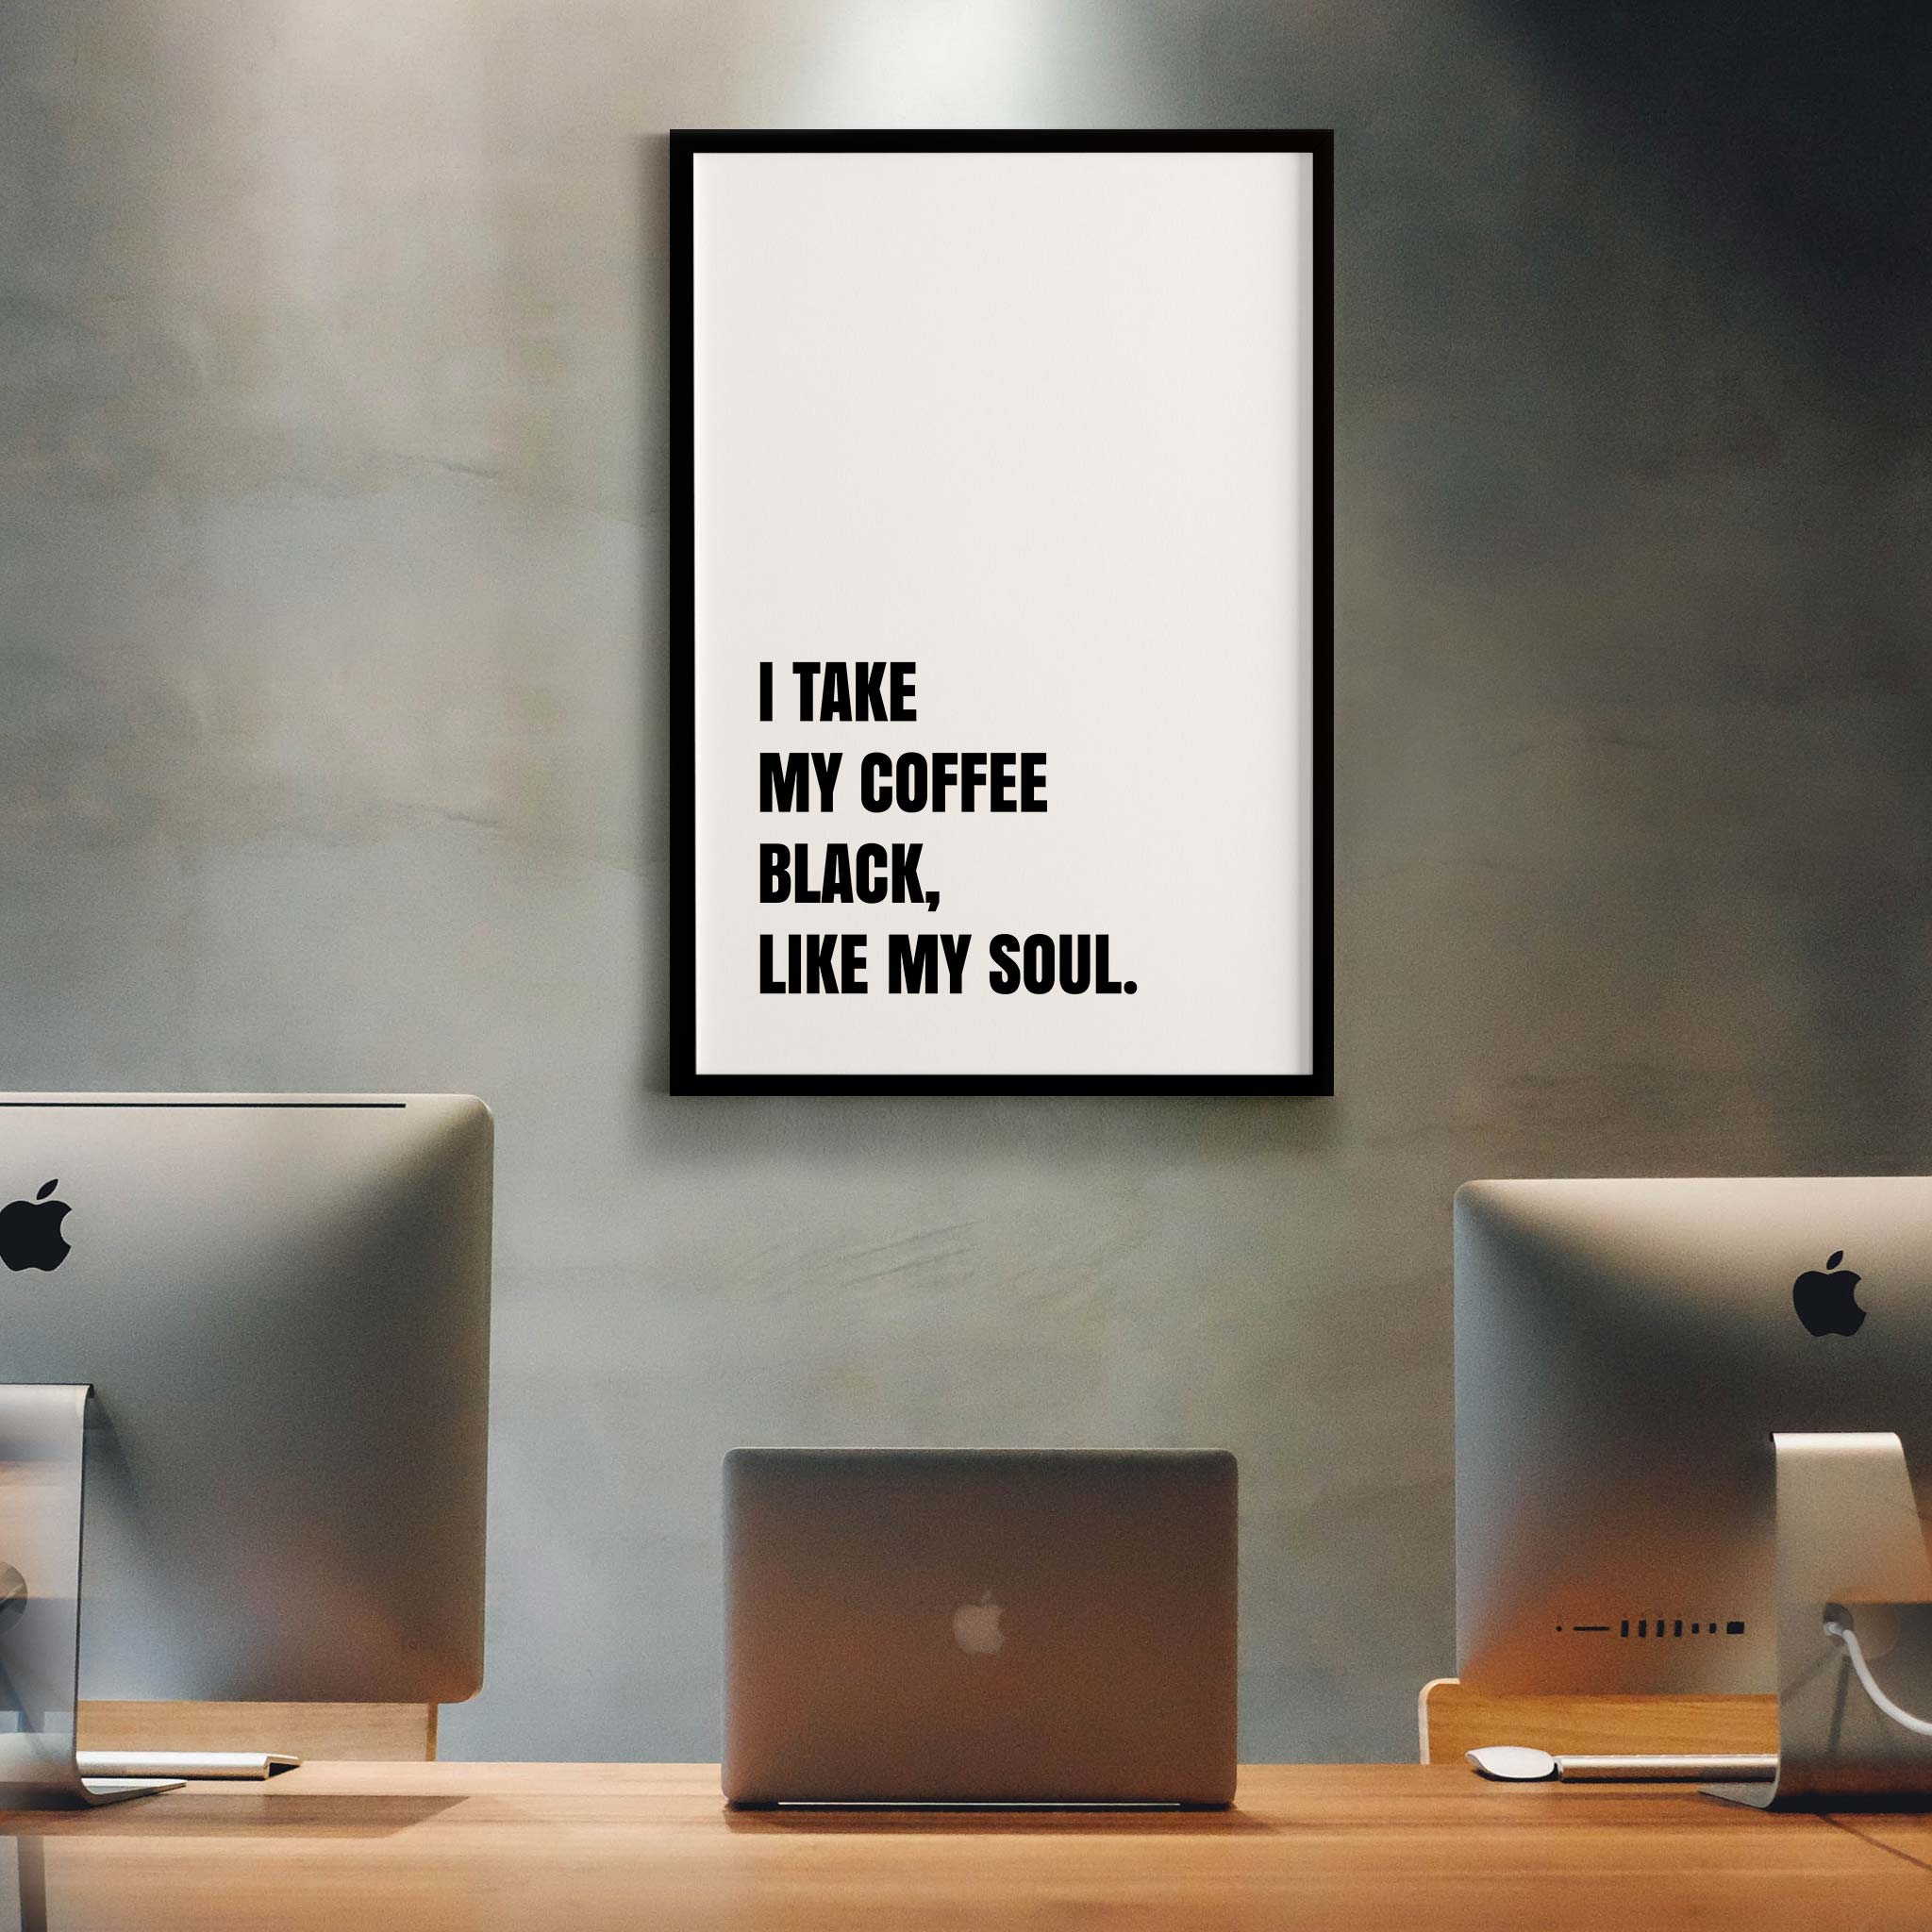 I take my coffee black, like my soul